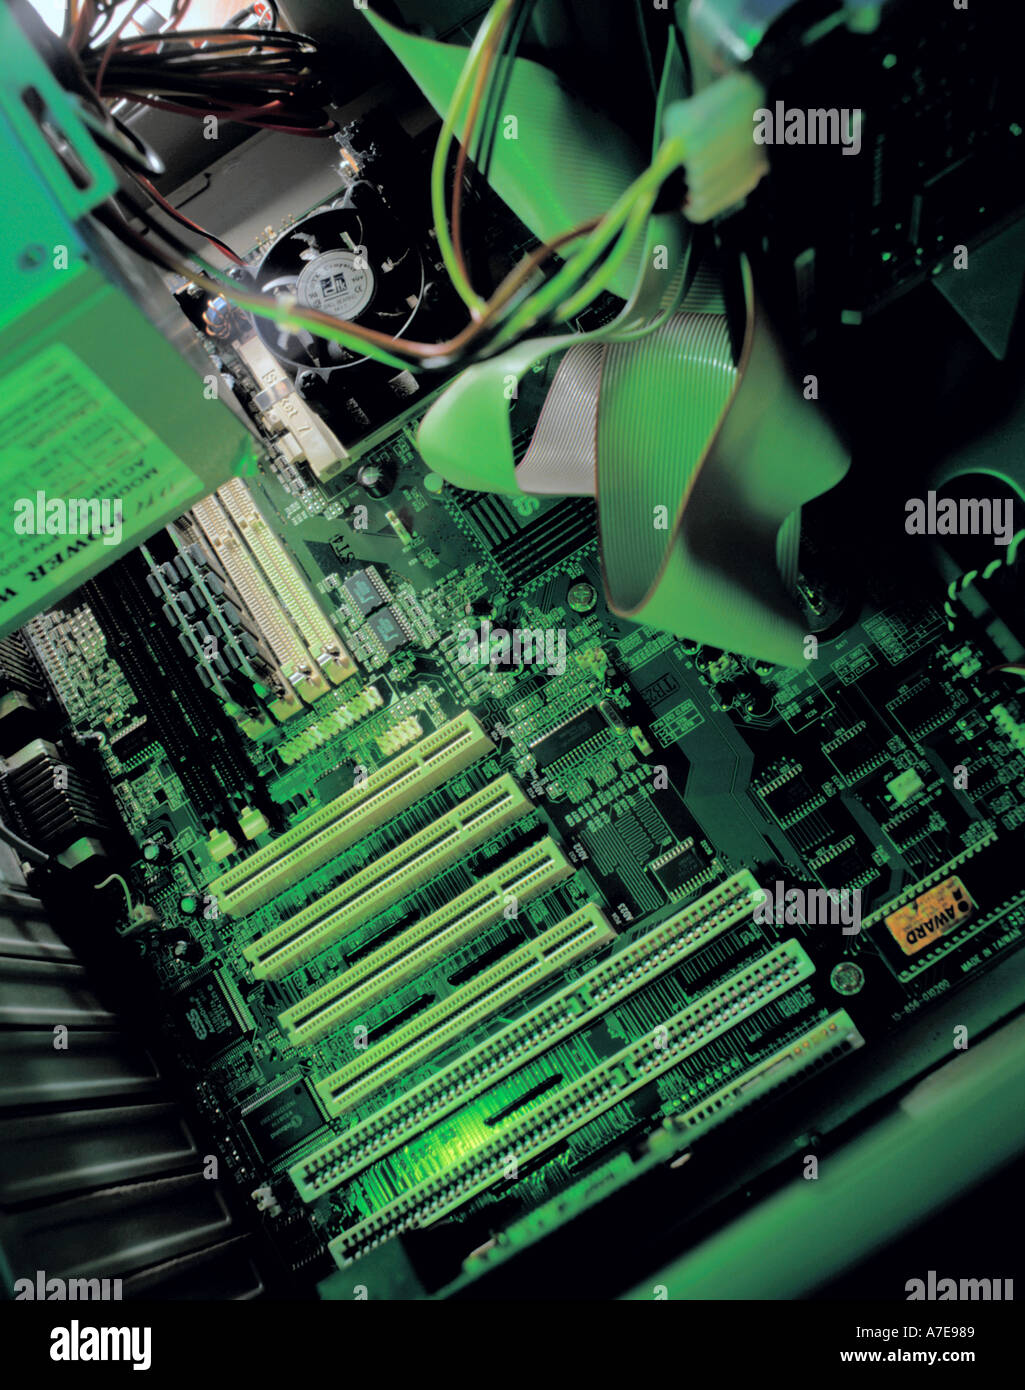 In einem Personal-Computer, zeigt Hauptplatine mit SCSI-Anschlüsse für Steckdose Häfen an der Basis des Bildes Stockfoto